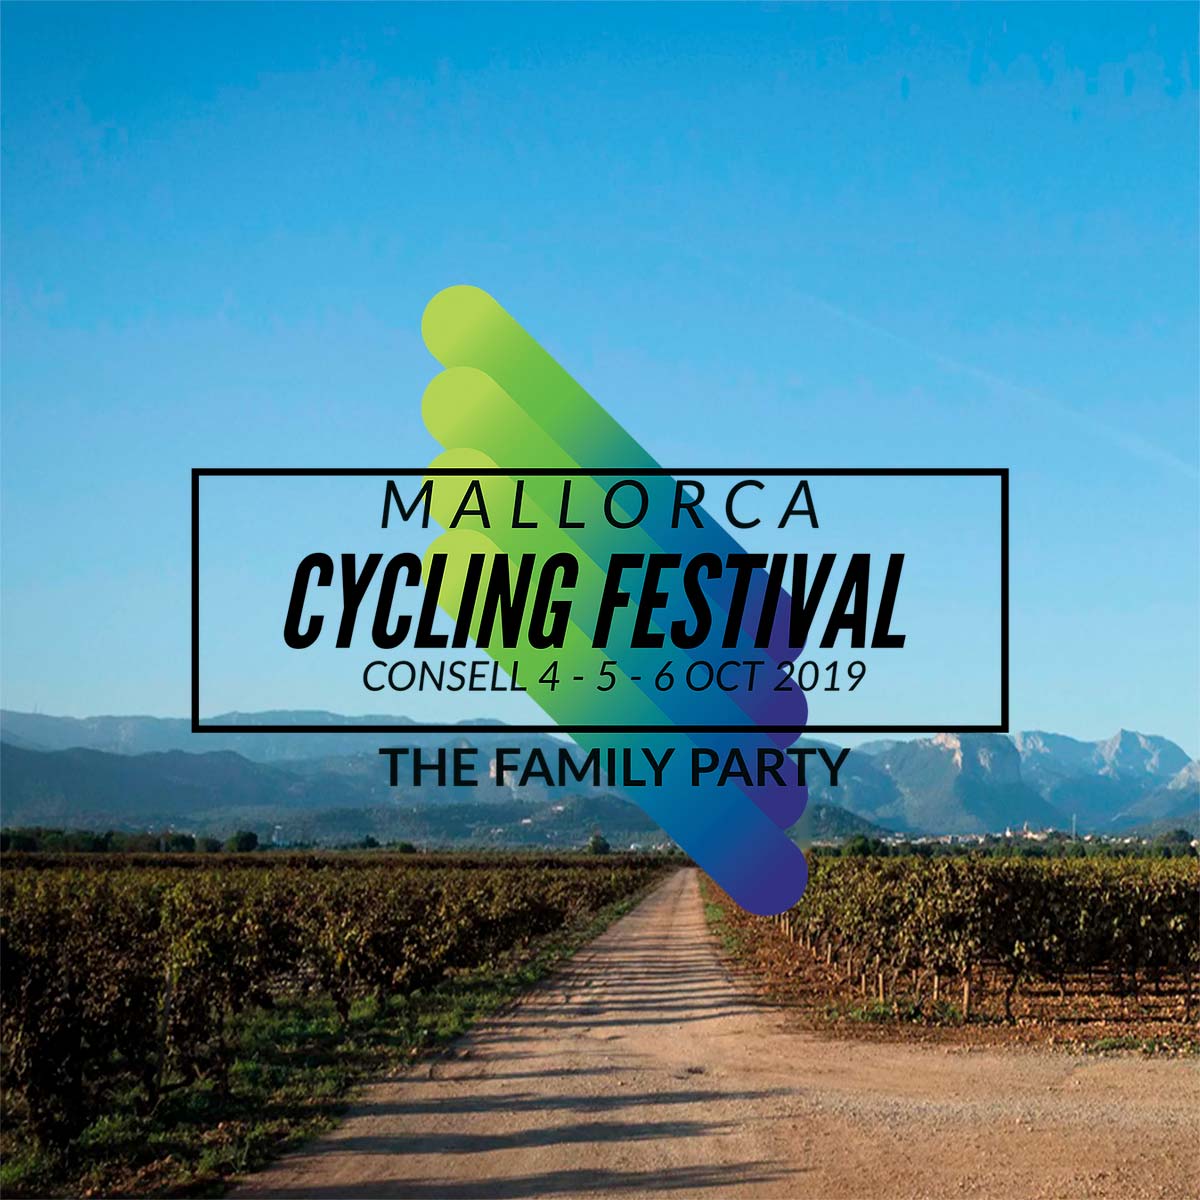 En TodoMountainBike: Llega el Mallorca Cycling Festival, un festival ciclista para toda la familia en un destino idílico